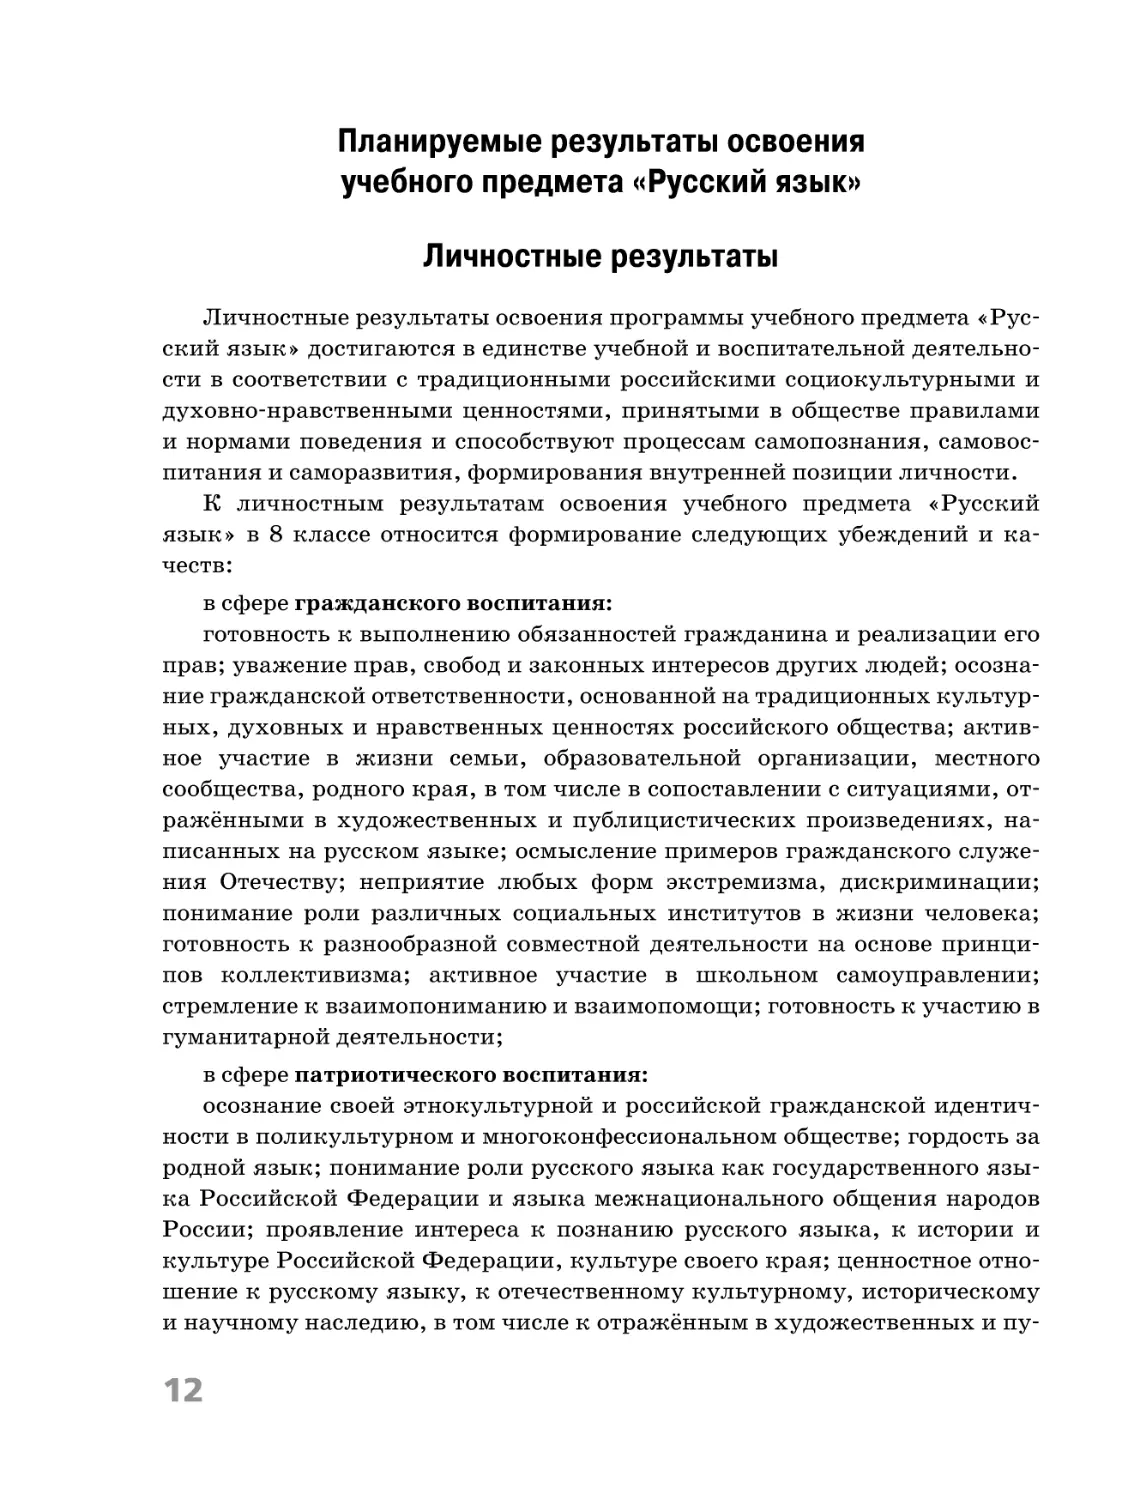 Планируемые результаты освоения учебного предмета «Русский язык»
Личностные результаты